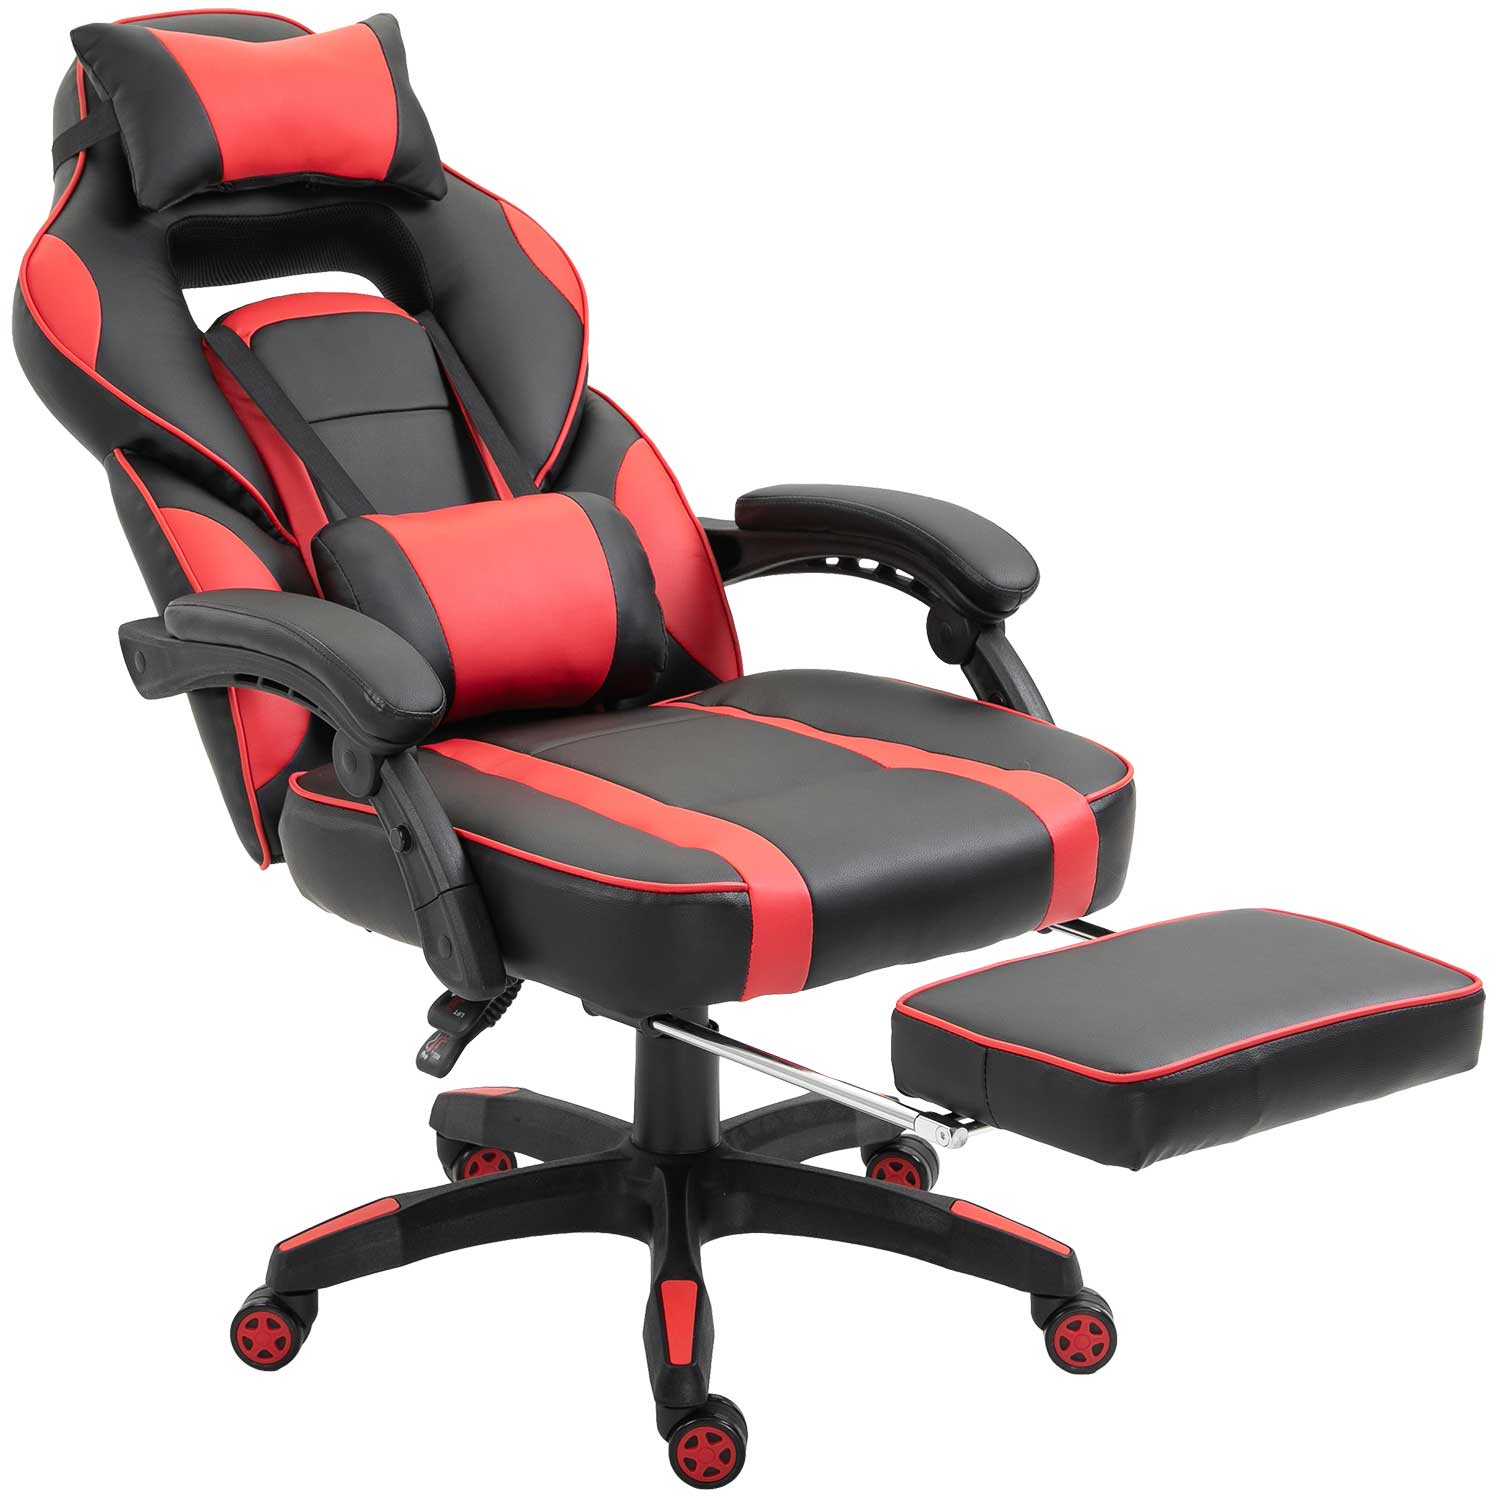 Furniture of America Rangel Gaming Chair in Red/Black